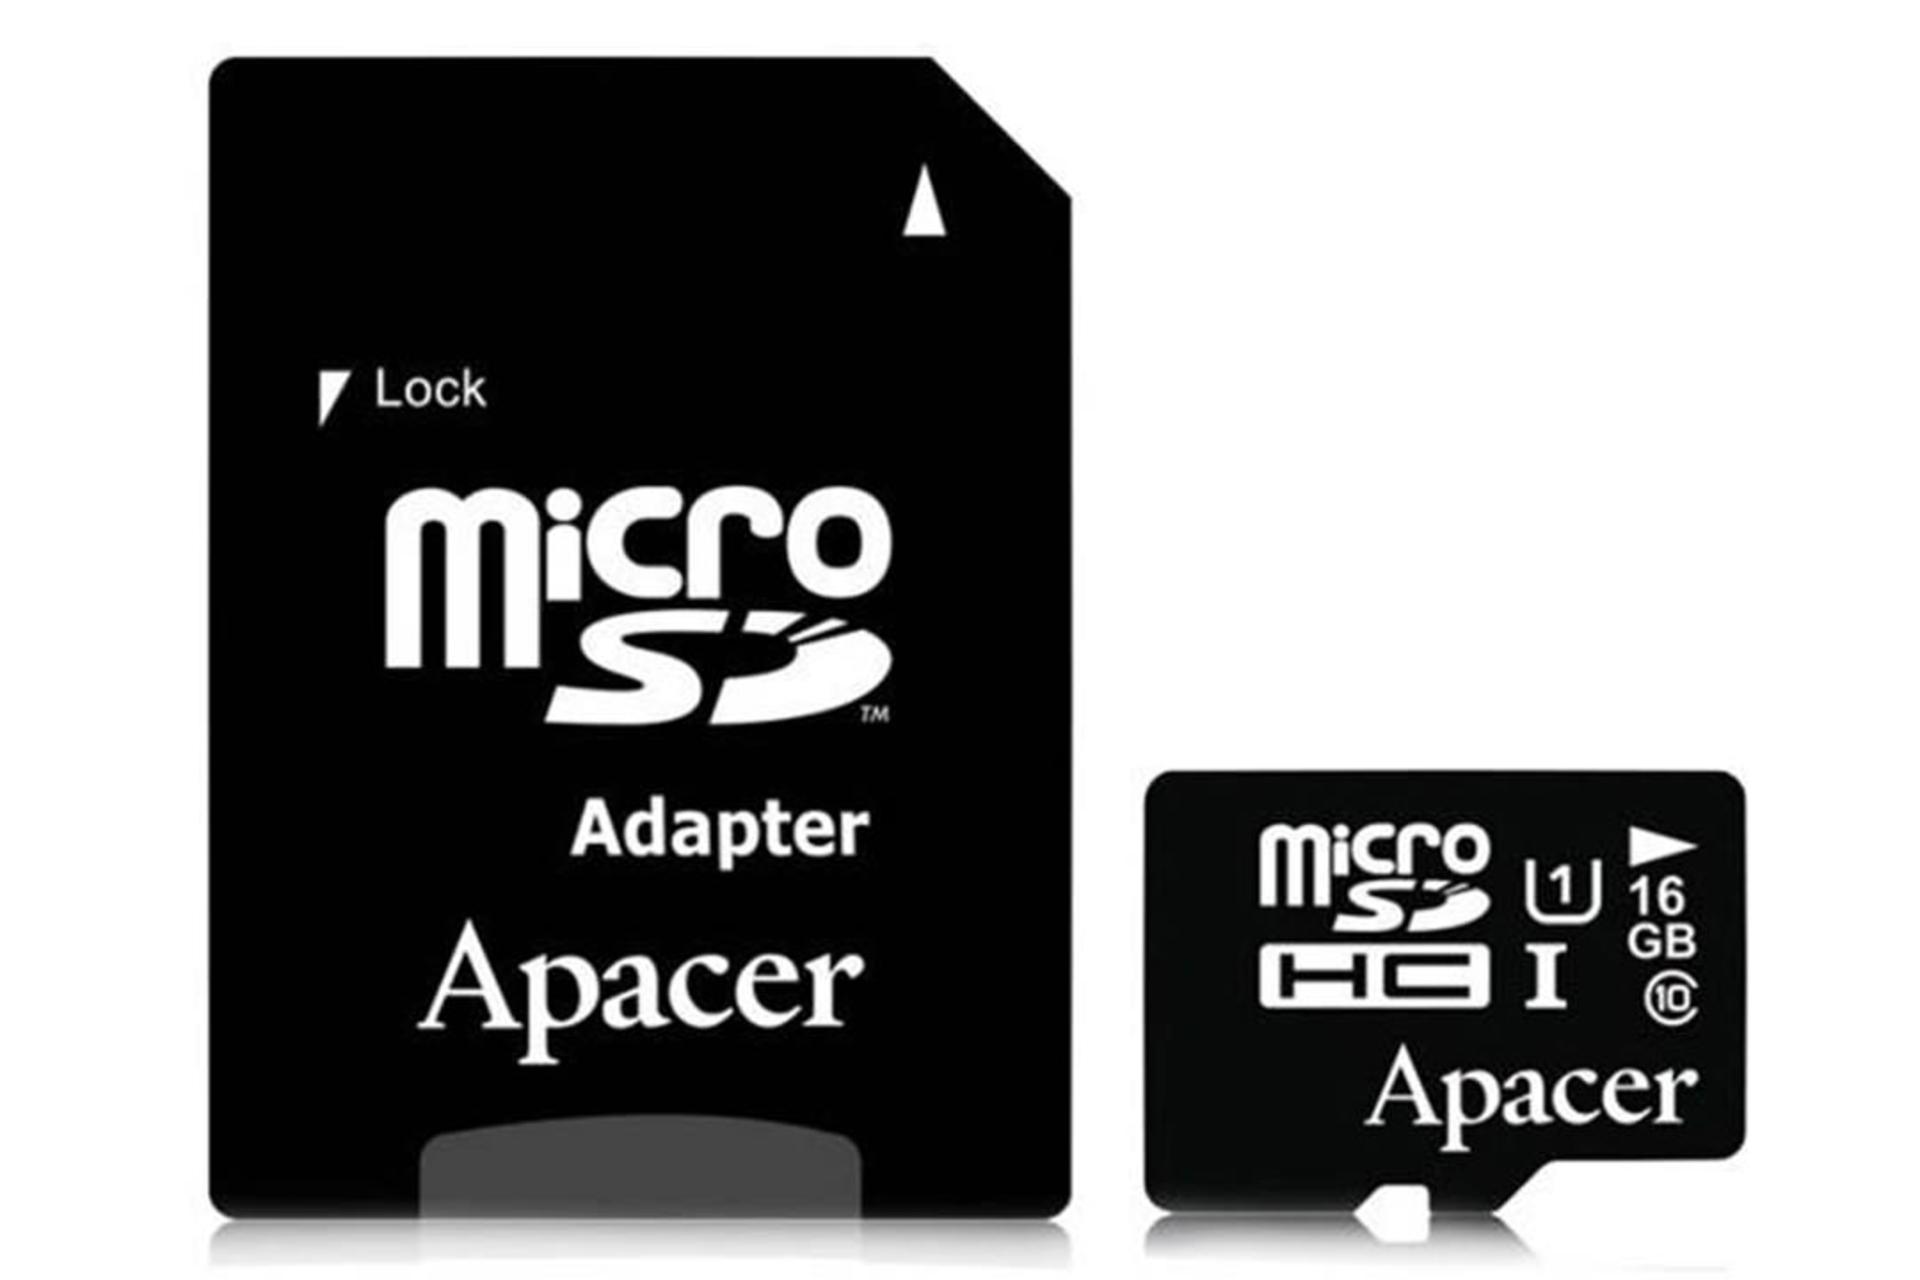 Apacer microSDHC Class 10 UHS-I U1 16GB